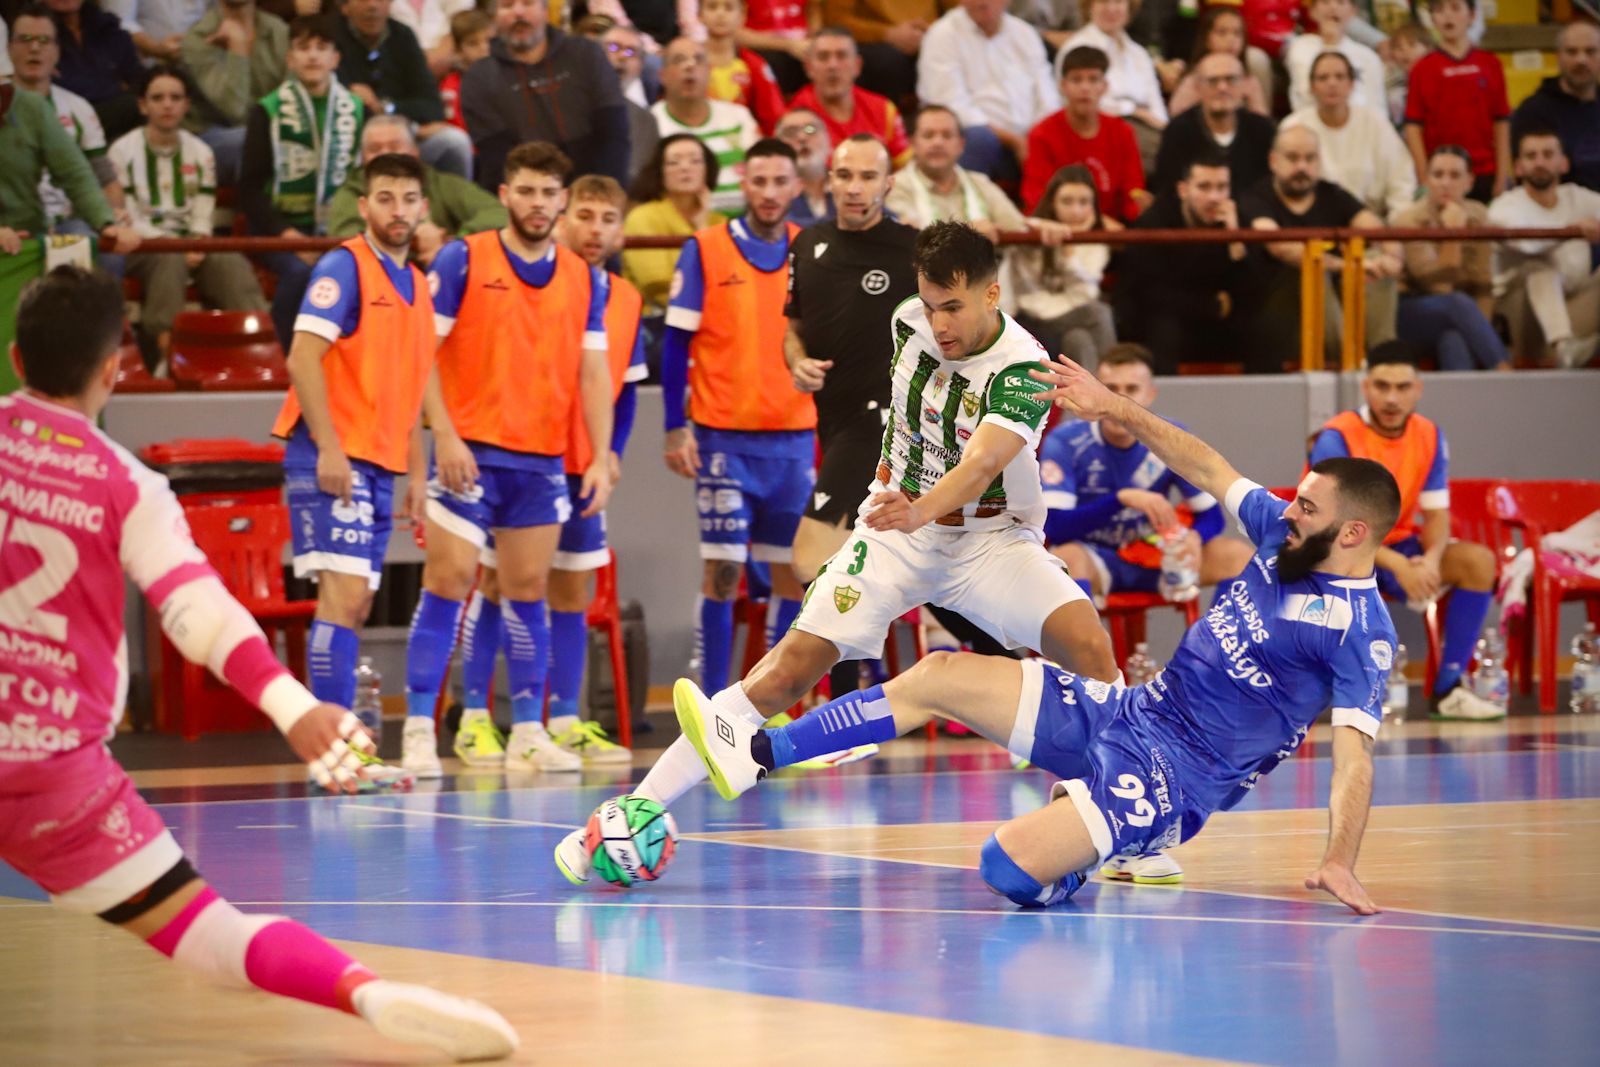 Córdoba Futsal - Manzanares : el partido en Vista Alegre en imágenes